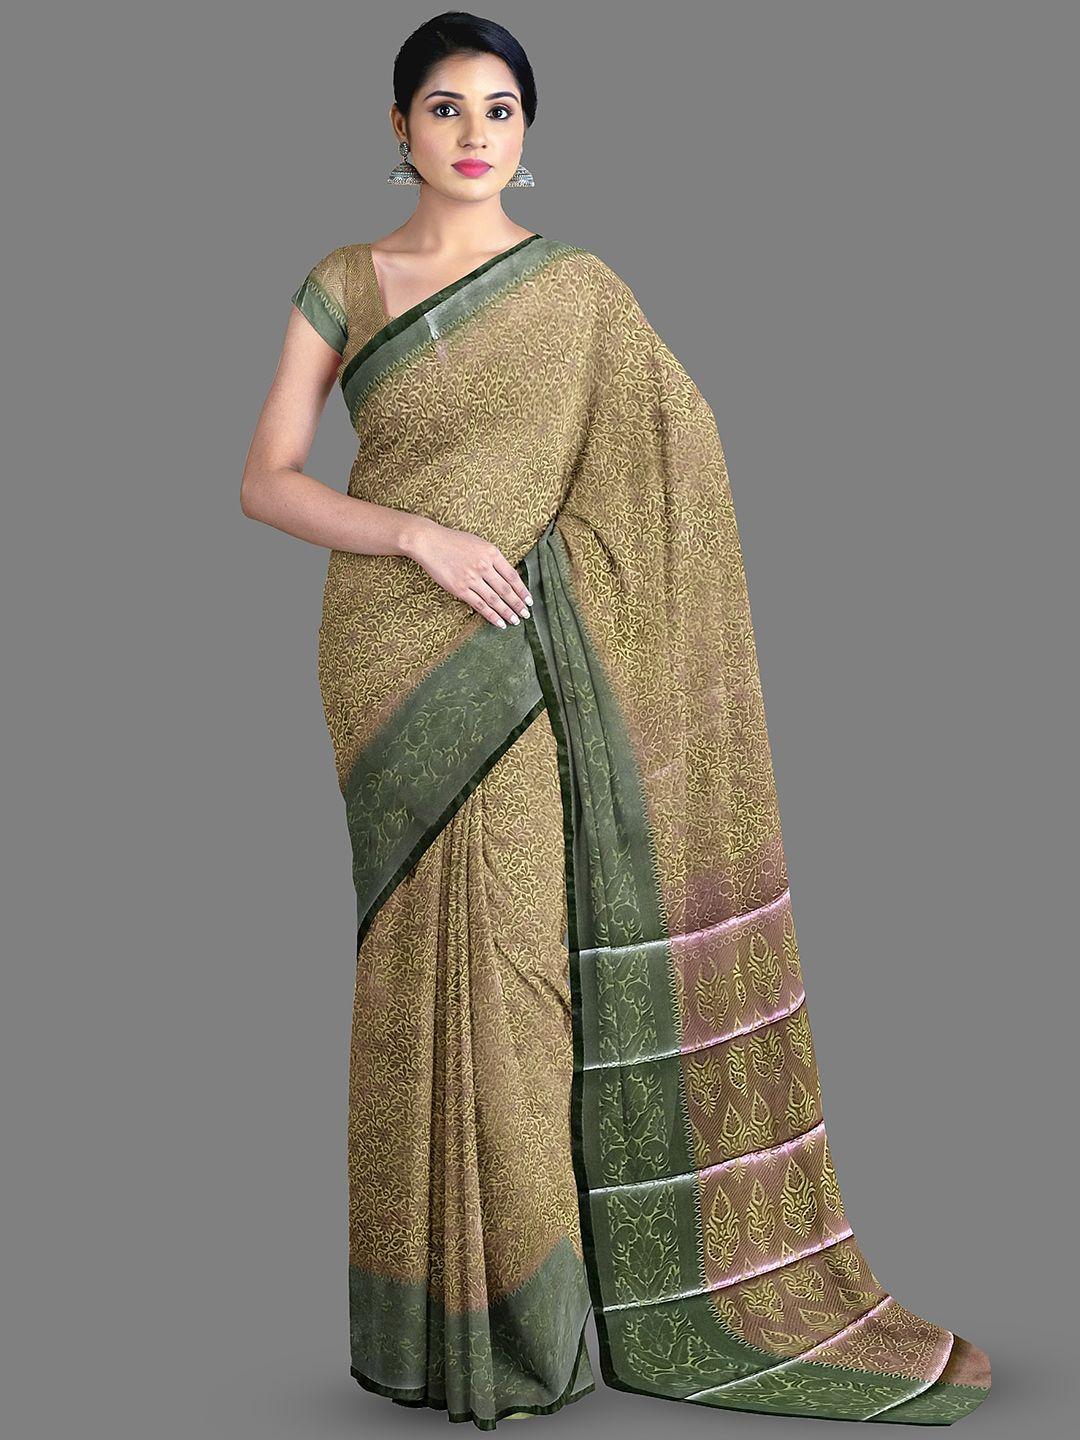 the chennai silks floral printed zari saree